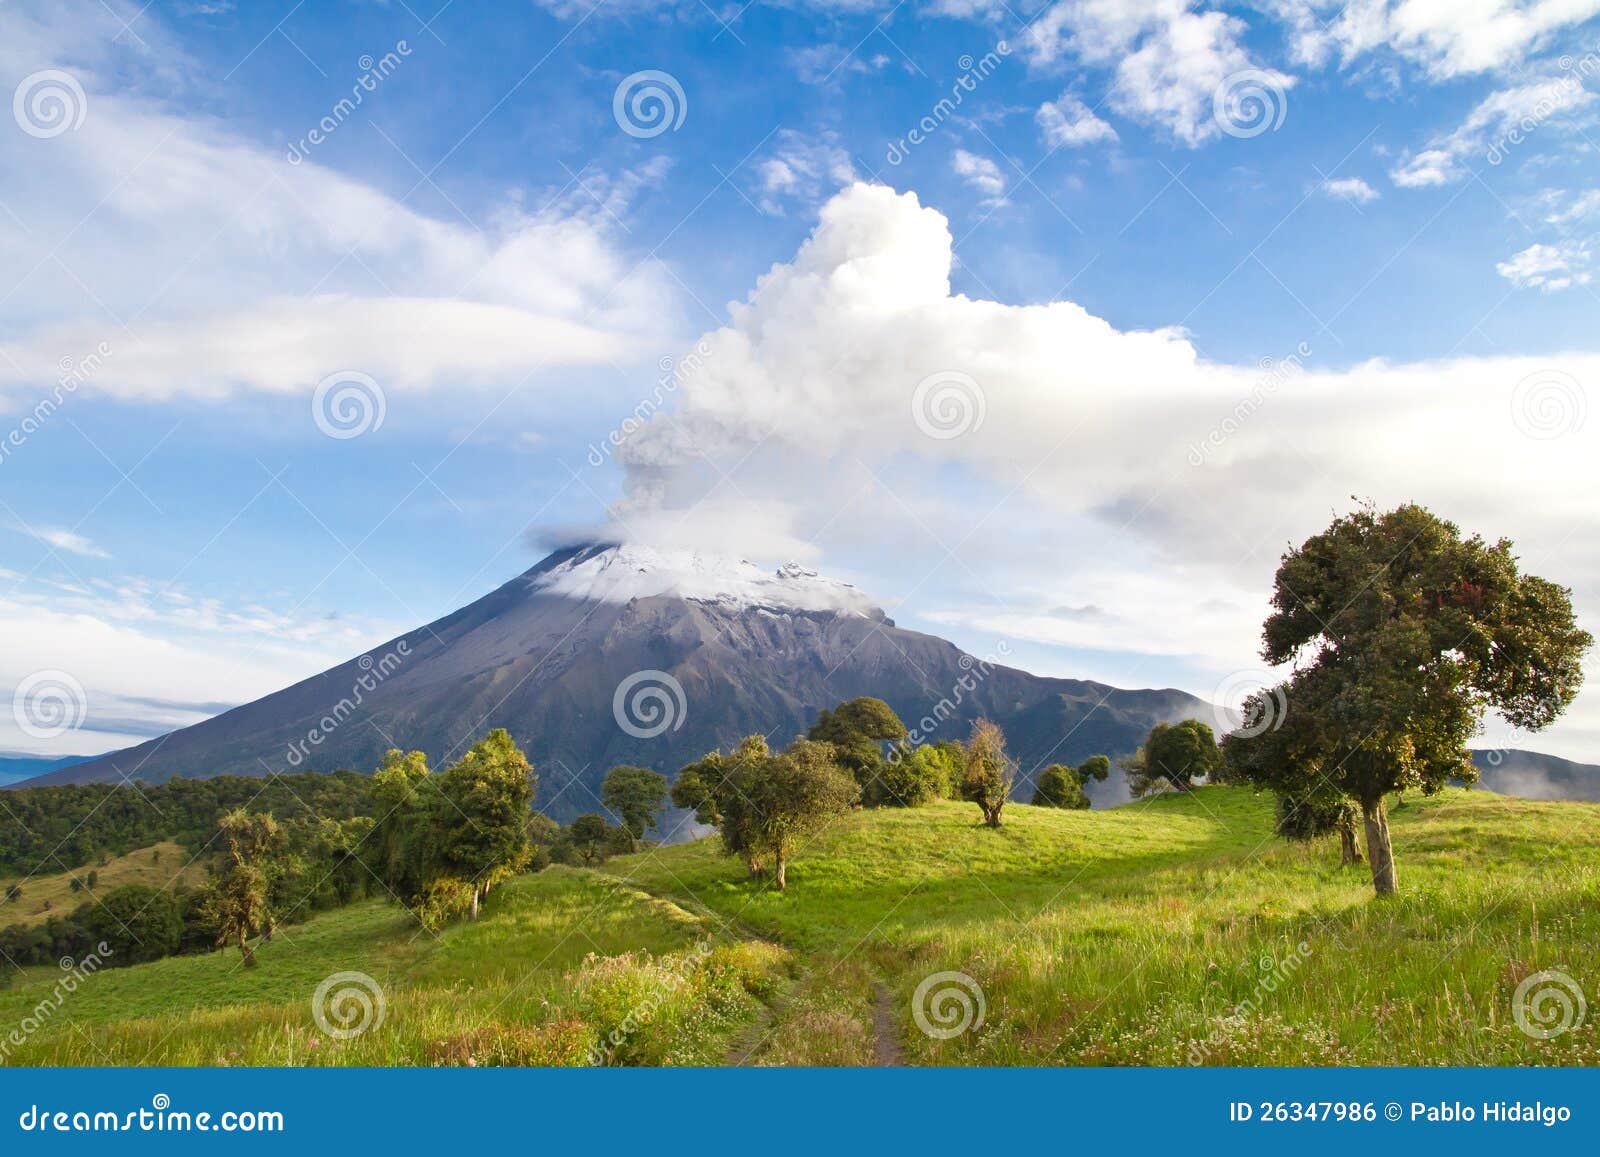 tungurahua volcano erupting at sunrise with smoke